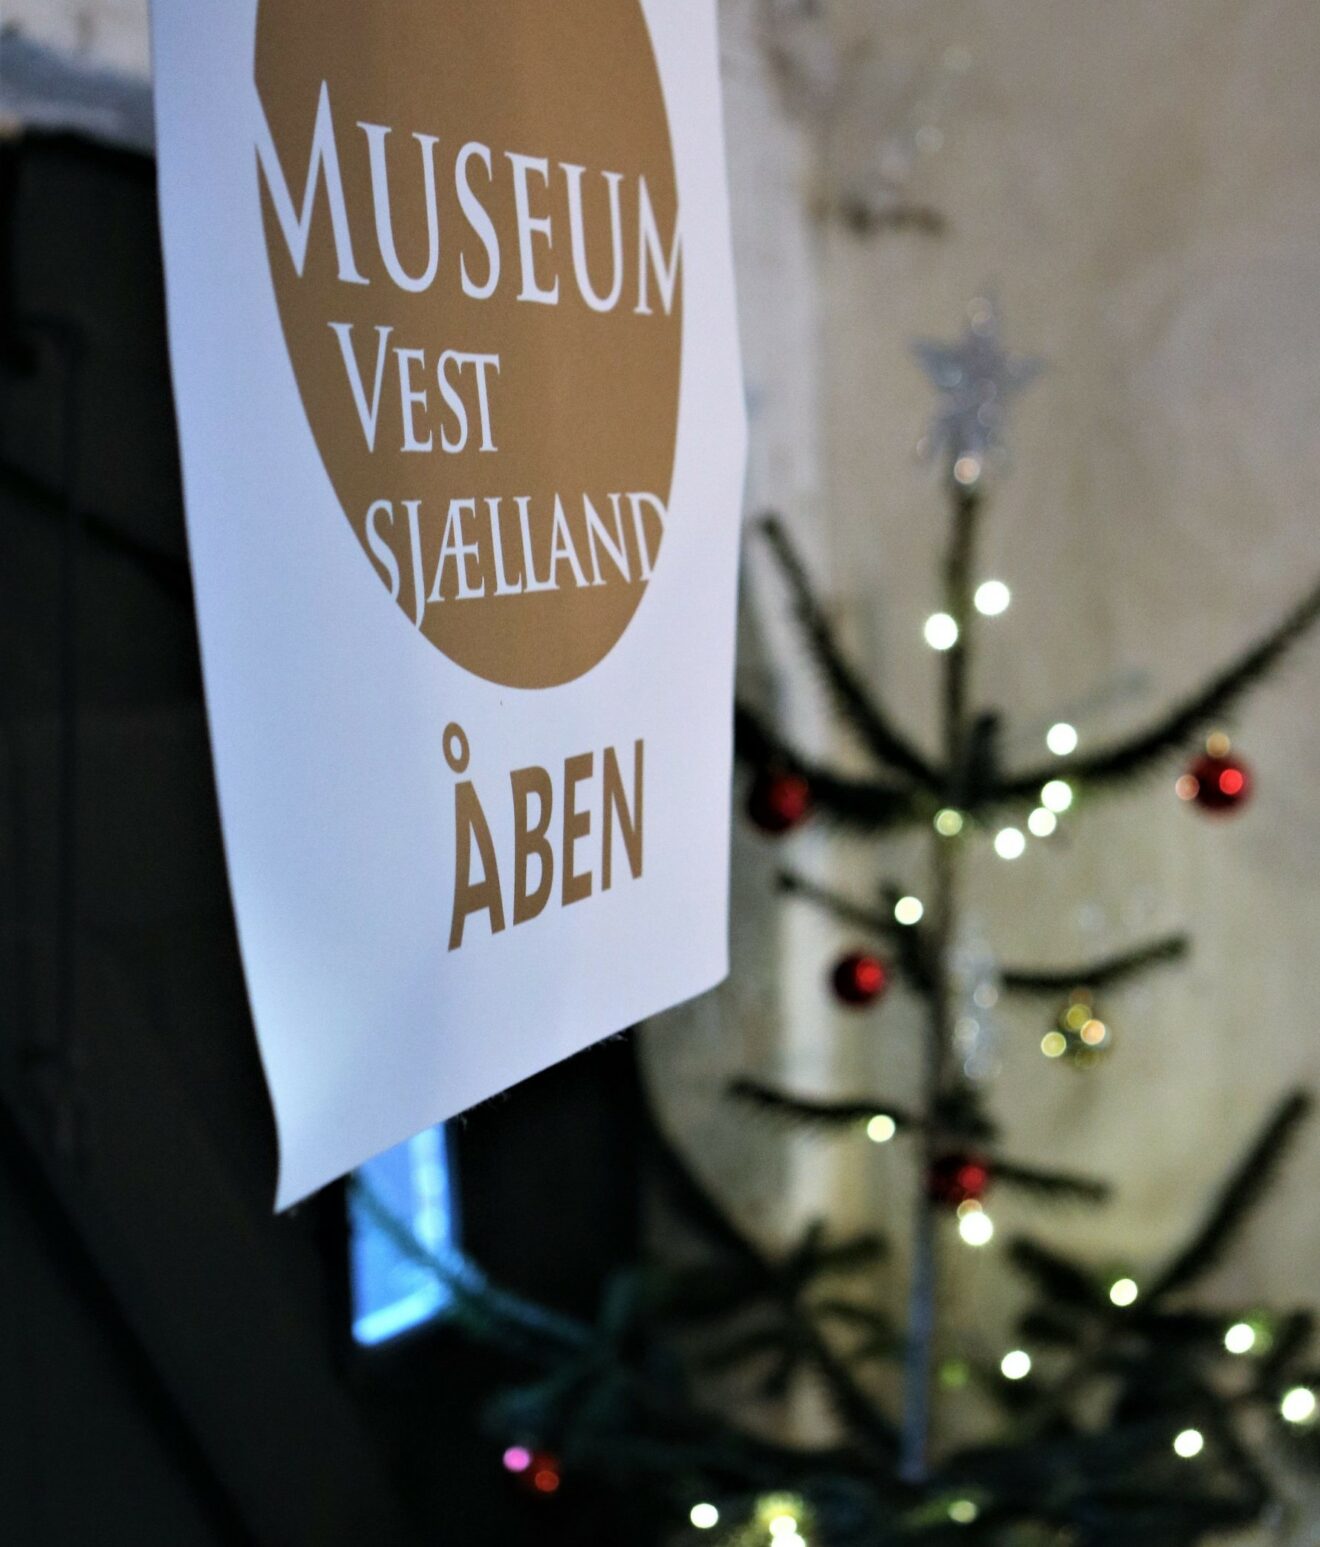 Find julegaven på Sorø Museum